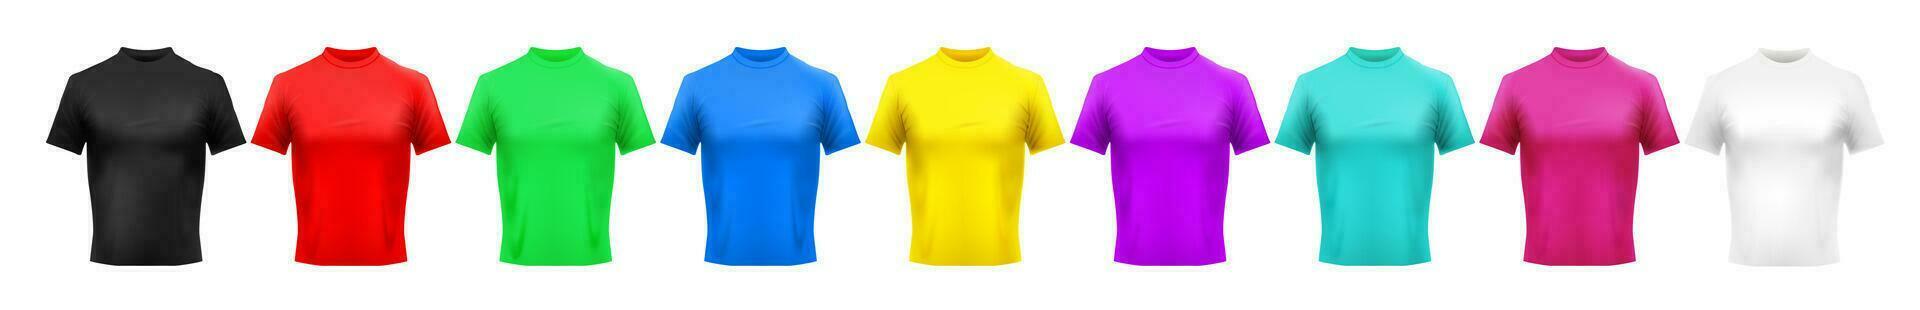 realistisch Farbe T-Shirt Attrappe, Lehrmodell, Simulation. Rot, Grün und Blau Männer Kleidung. Gelb, lila und cyan farbig Shirt. Rosa, schwarz und Weiß Hemden Vorlage Vektor einstellen